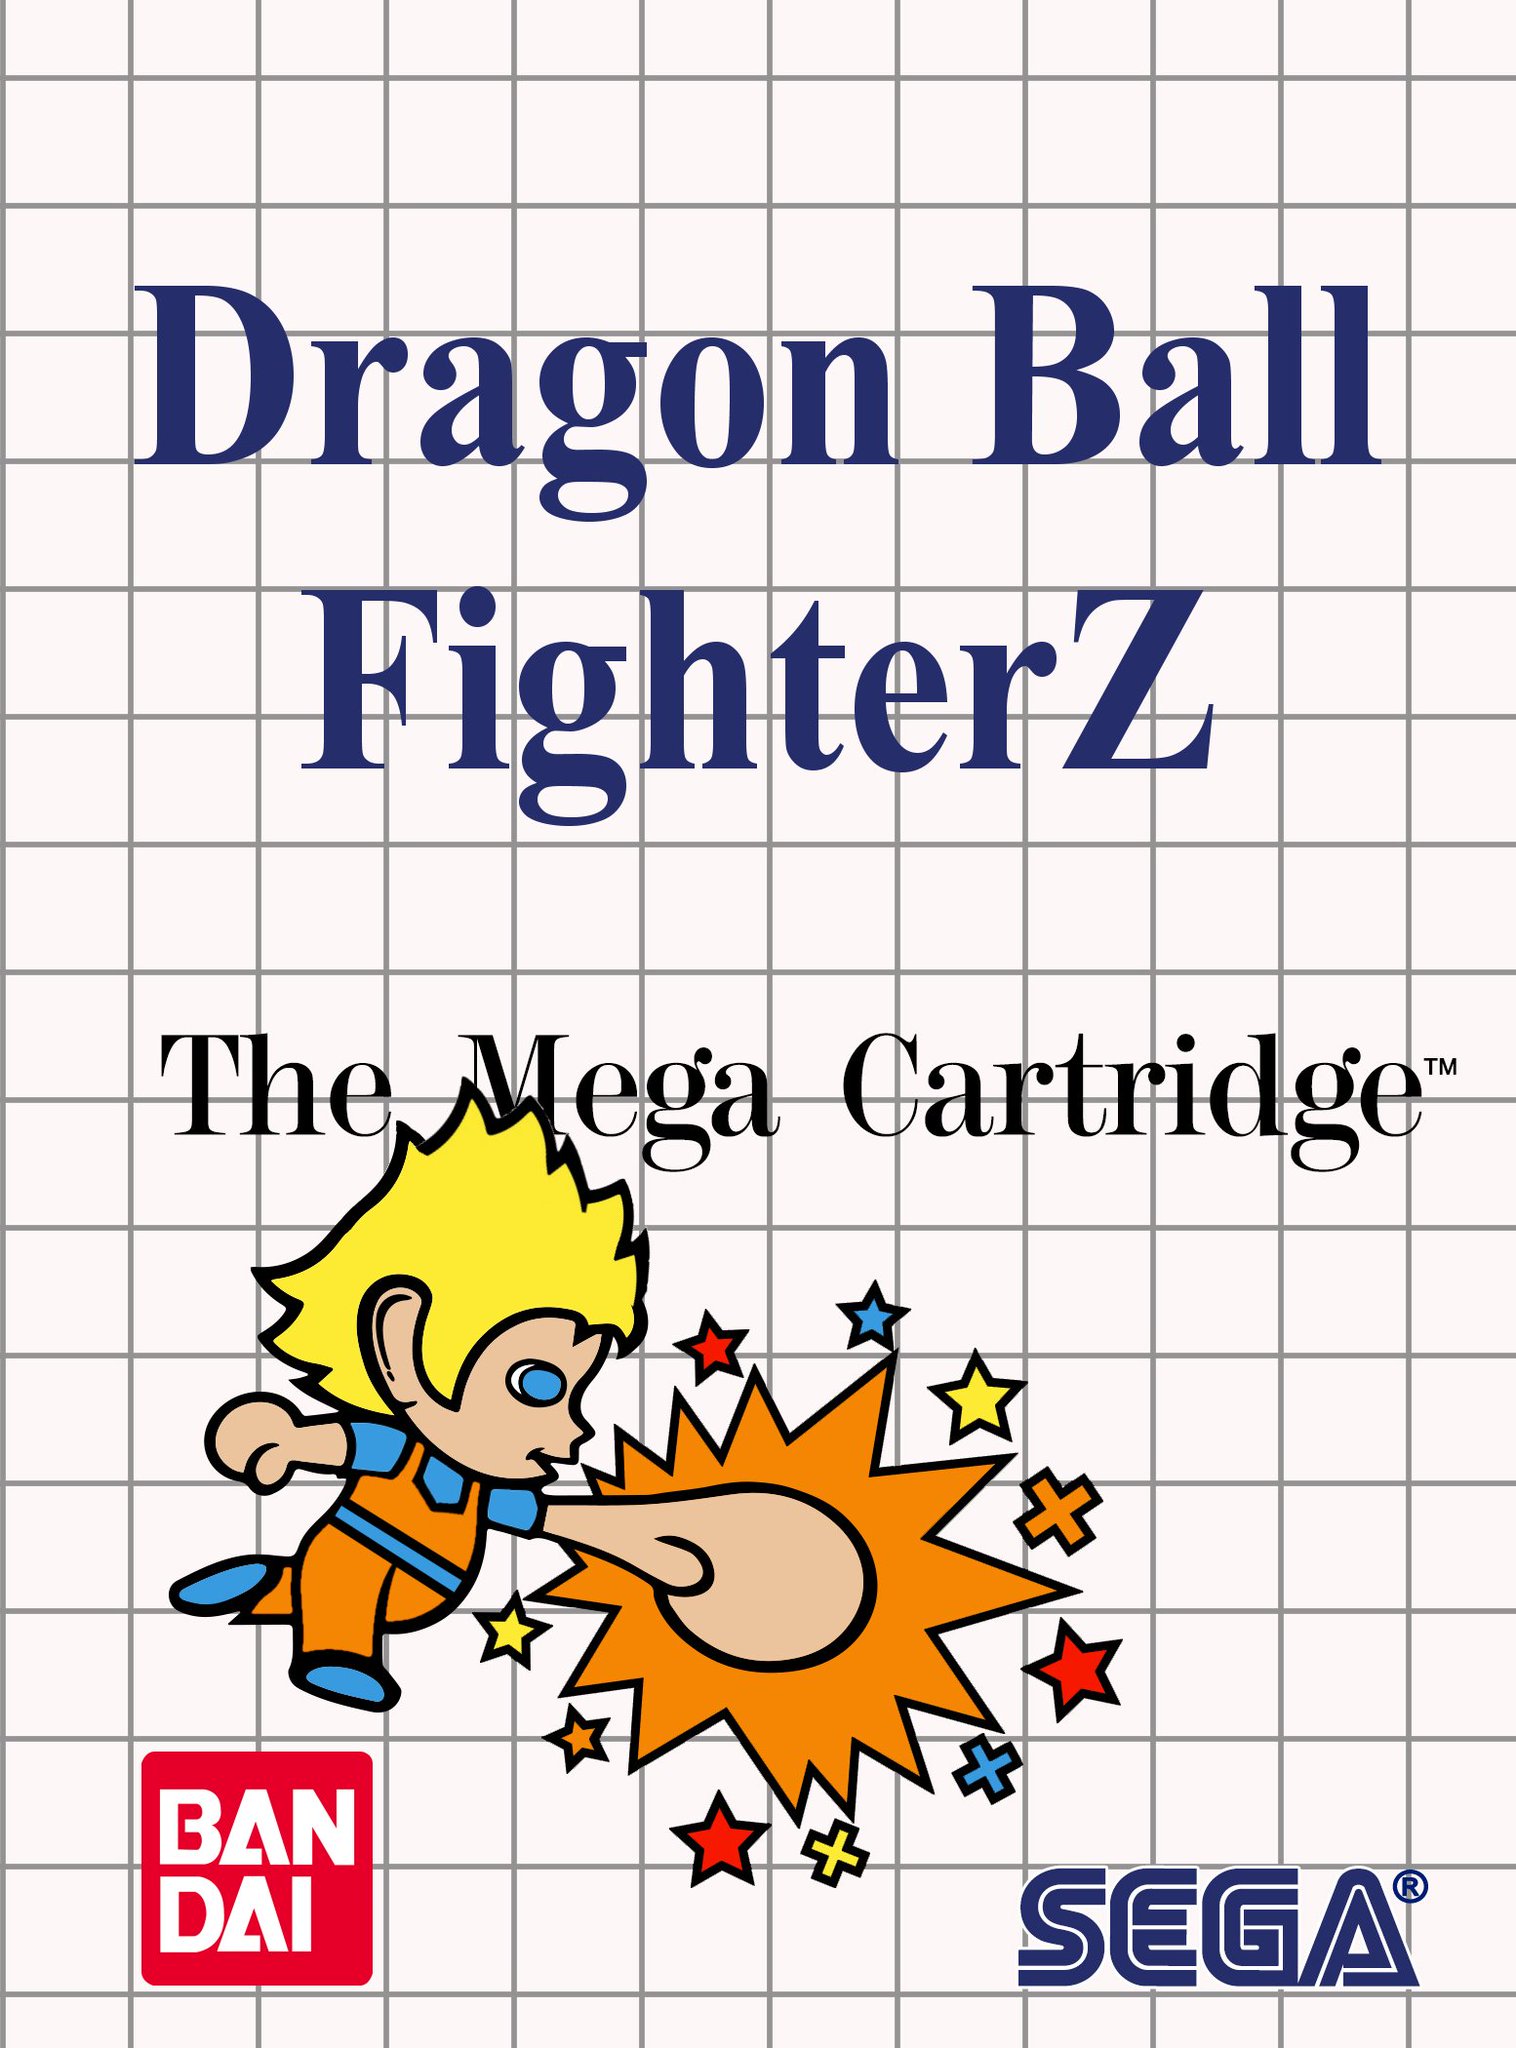 [MULTI] Dragon Ball Fighter Z DM57L_kW0AAh0fX